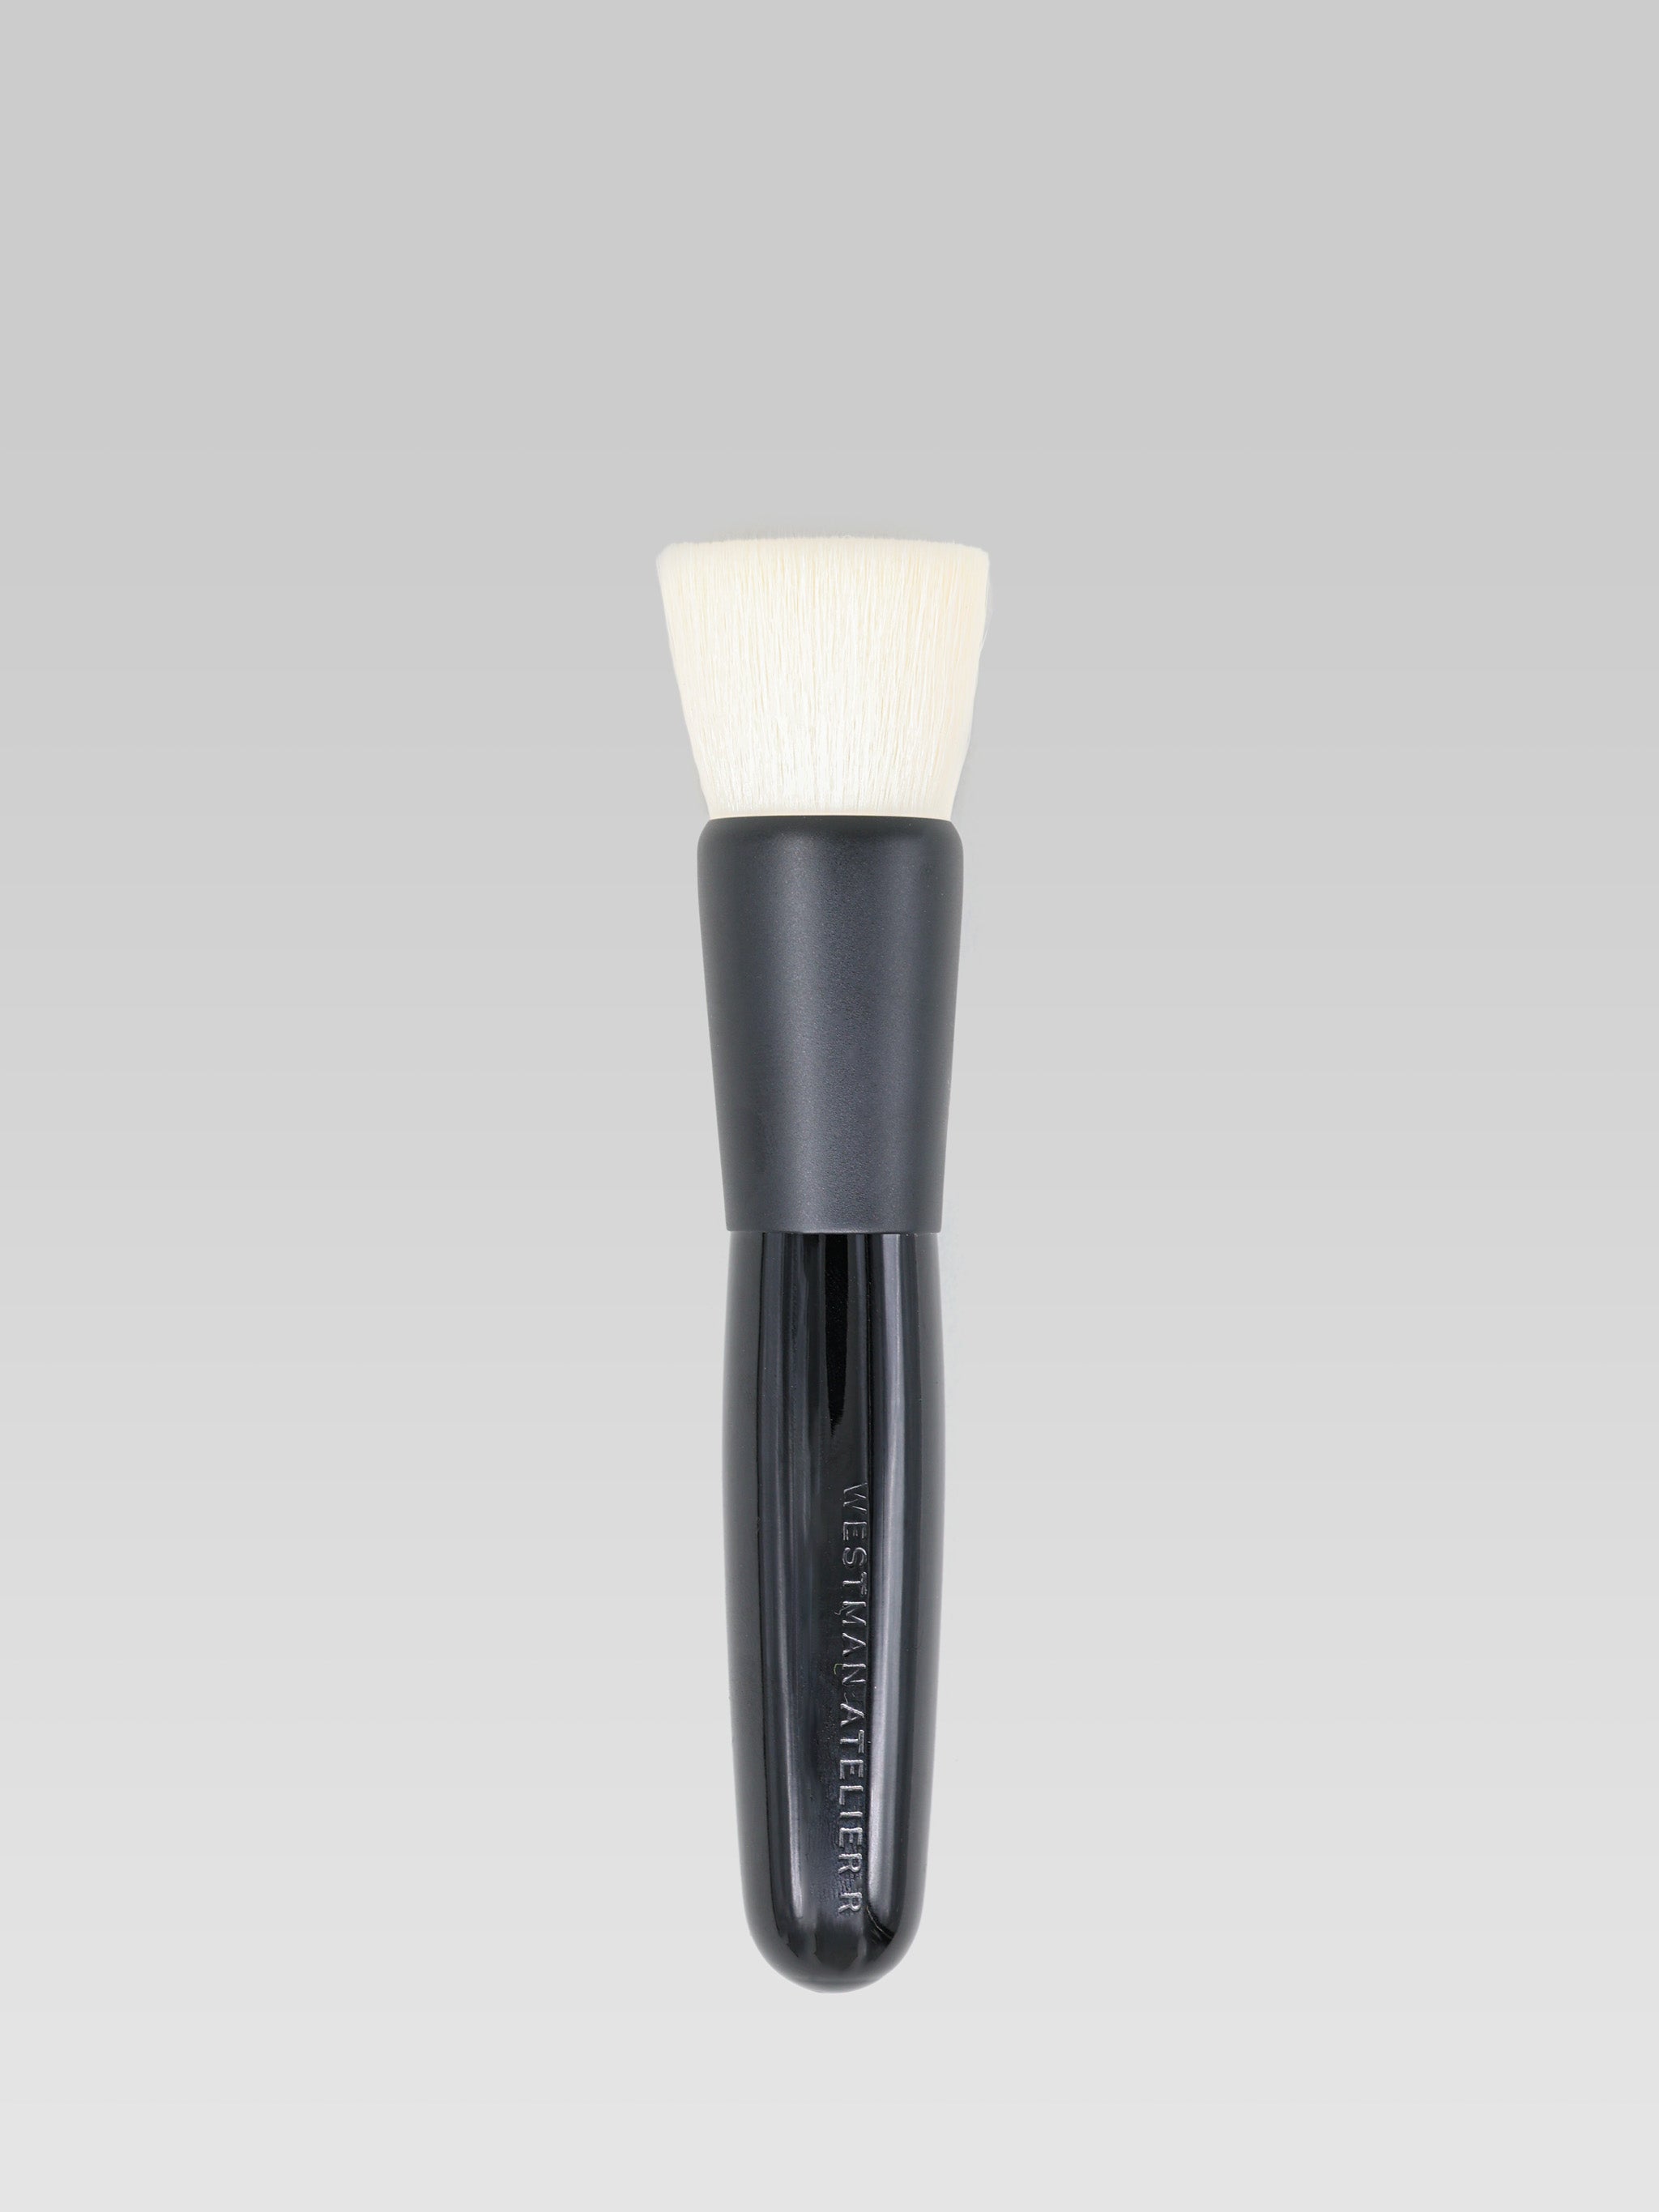 Westman Atelier Blender Brush product shot